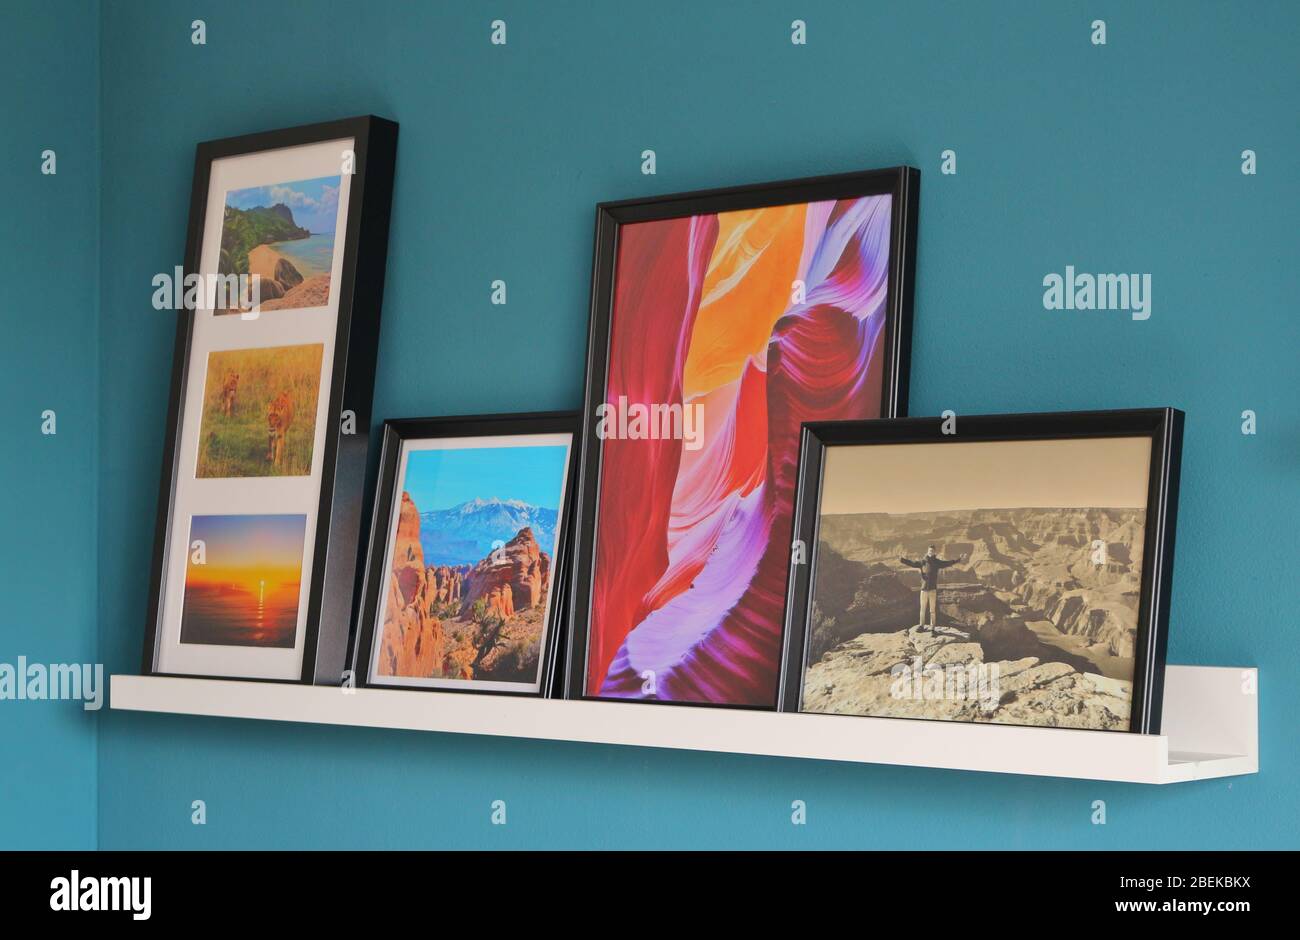 Genießen Sie einen Rückweg zu guten Reiseerinnerungen Foto von Bildern mit Reiseszenen, die eine Geschichte erzählen.die Bilder stehen auf einem Regal an einer Wand. Stockfoto